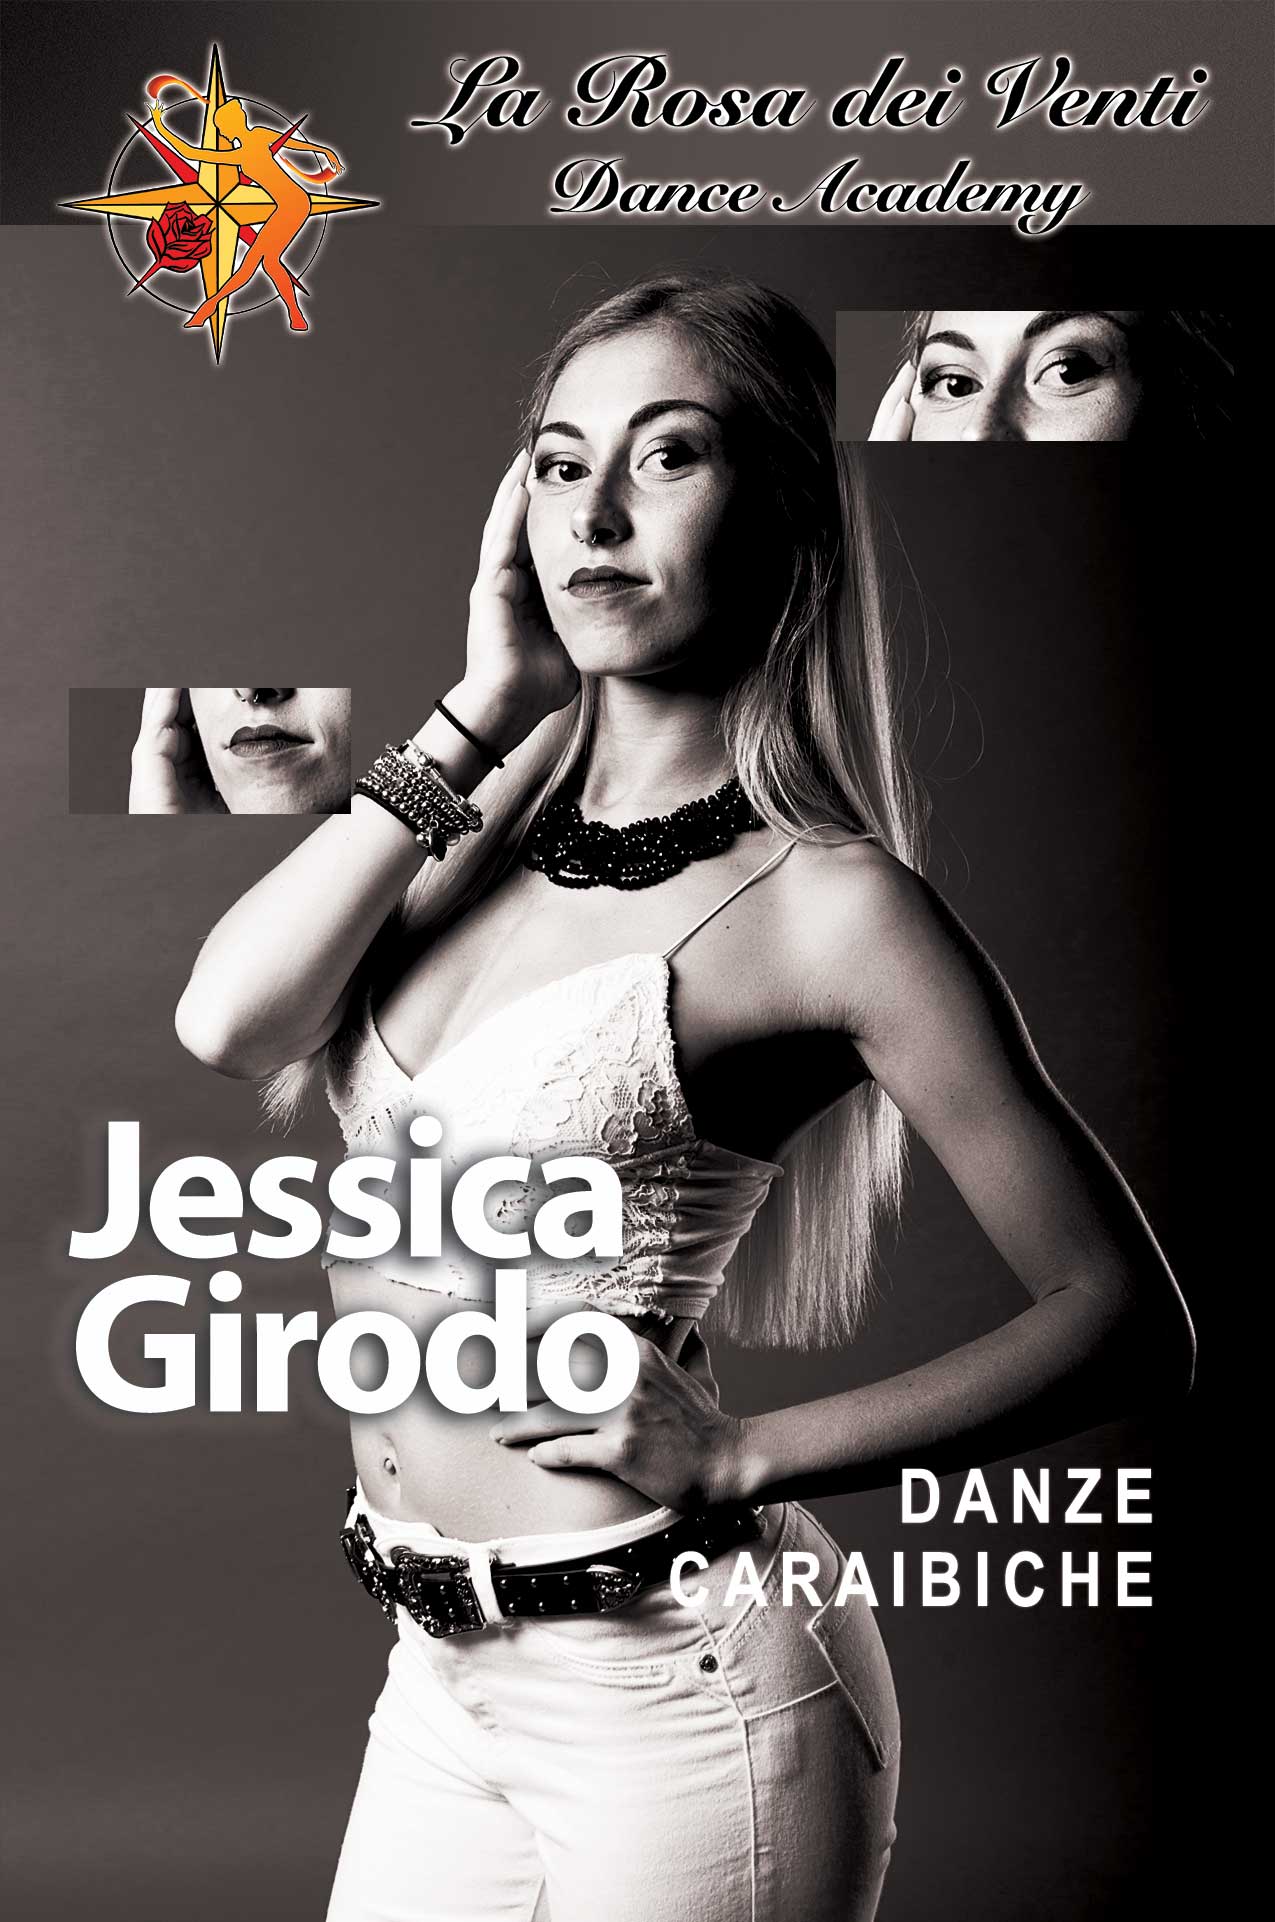 Jessica Girodo Danze Caraibiche La Rosa dei Venti Dance Accademy